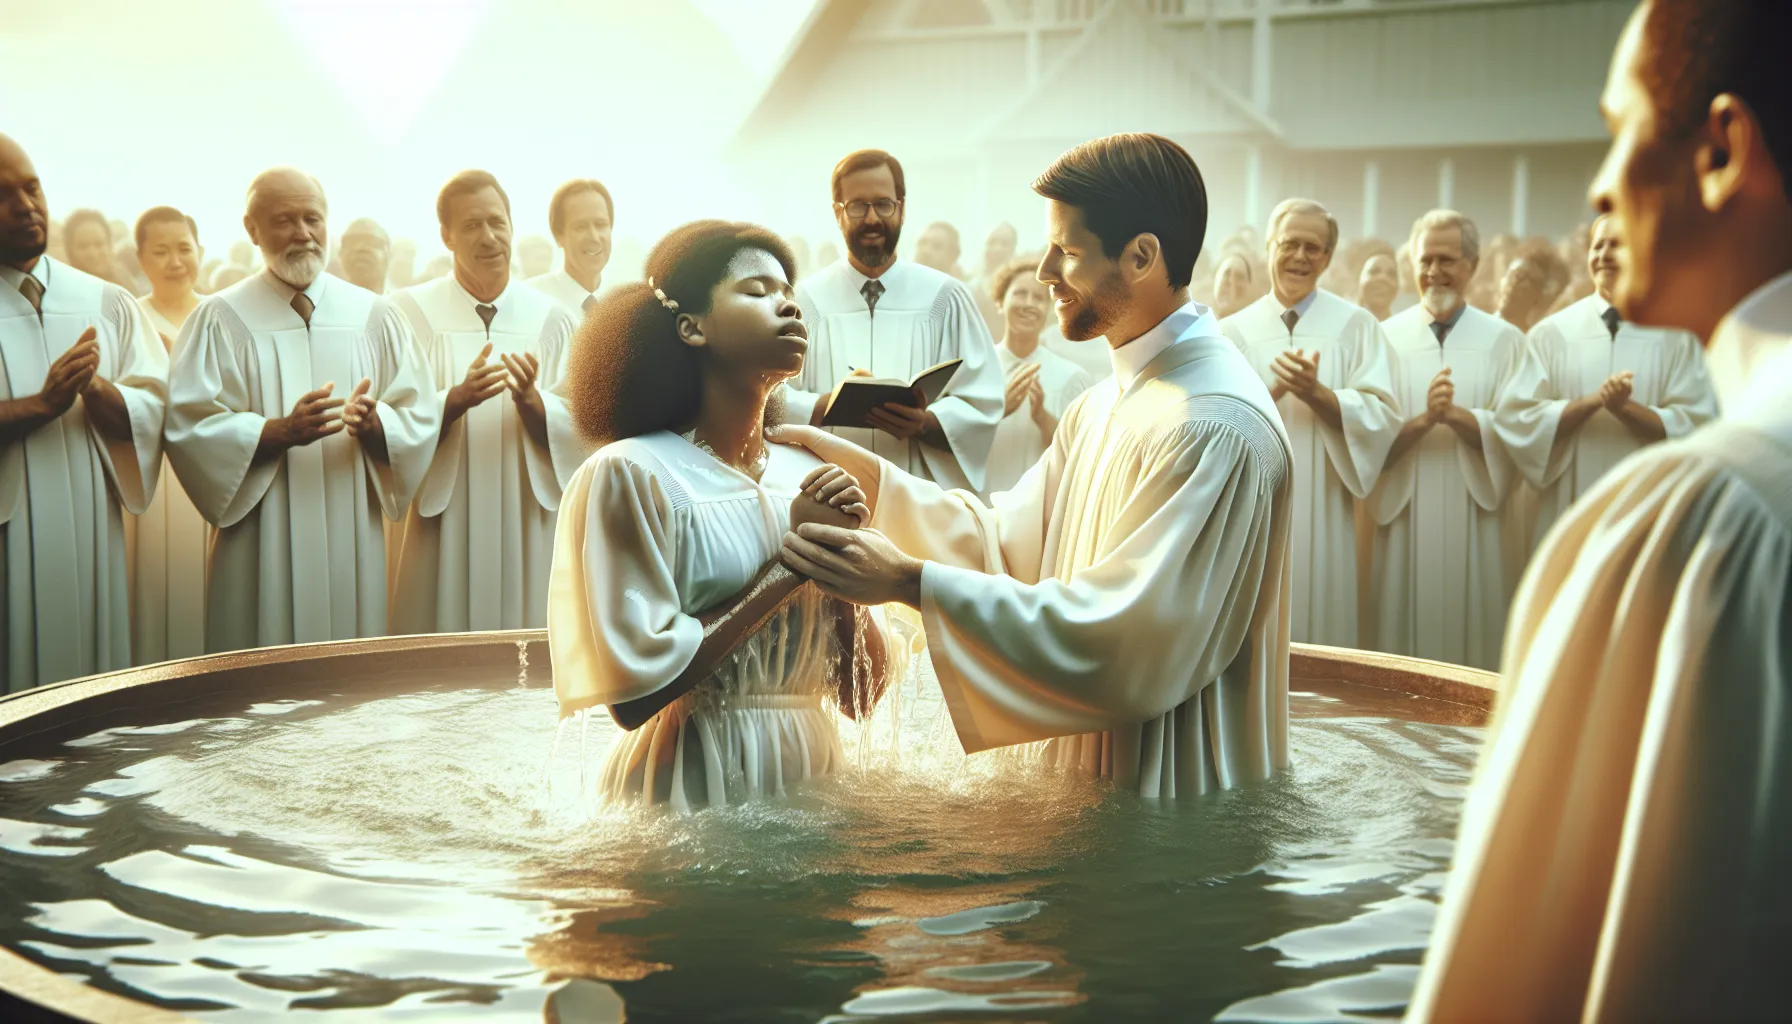 Imagen de una persona siendo sumergida en agua durante un bautismo